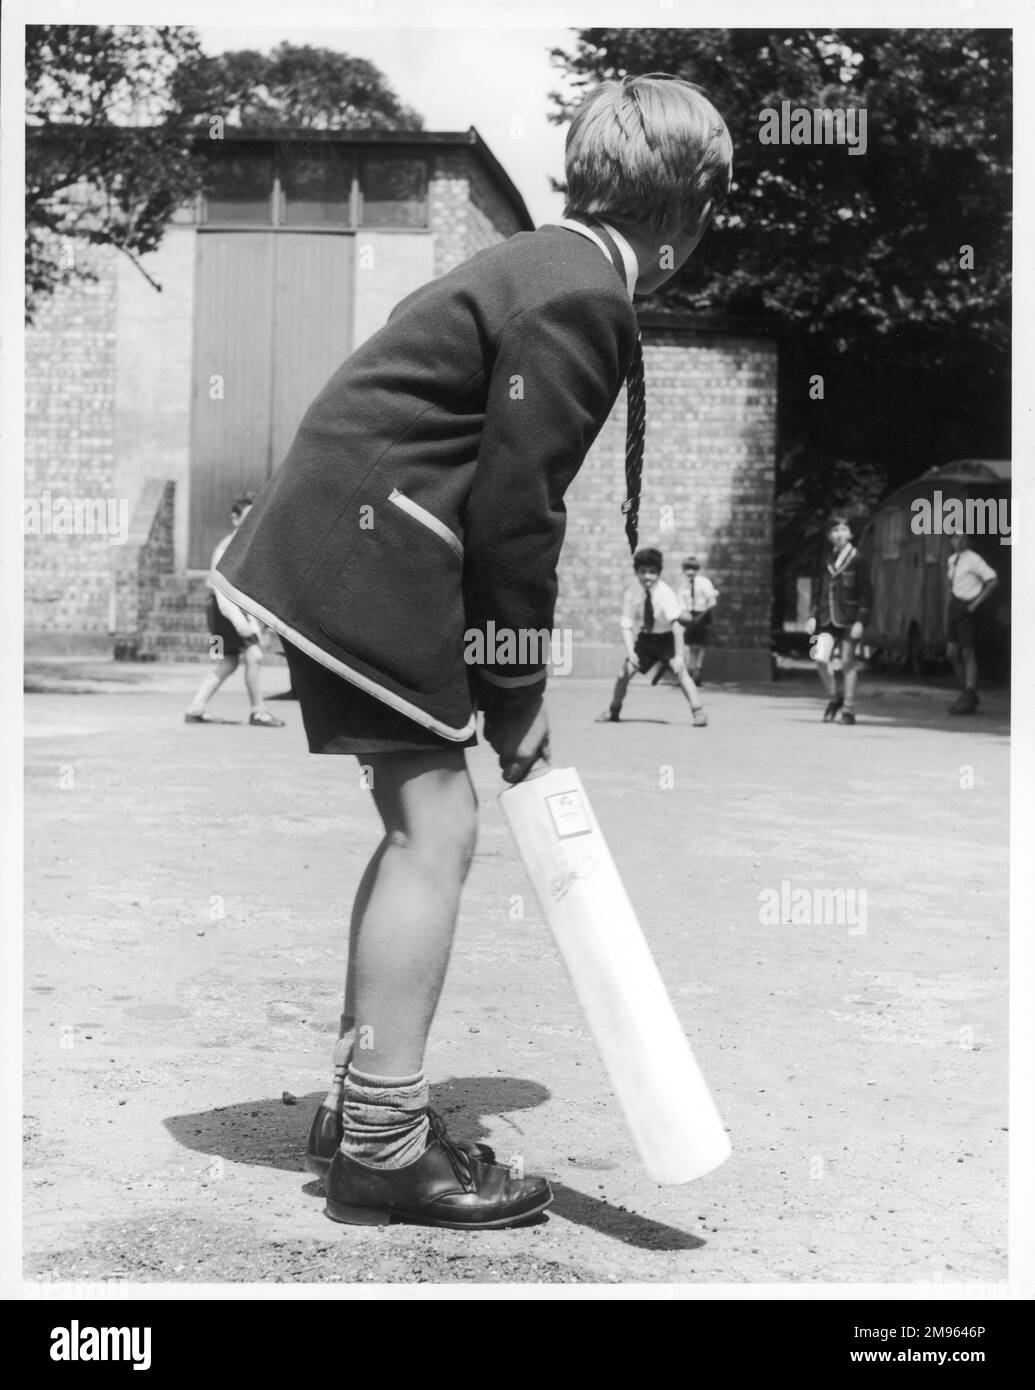 Colegiales jugando un juego improvisado de cricket; un niño se prepara para batear Foto de stock